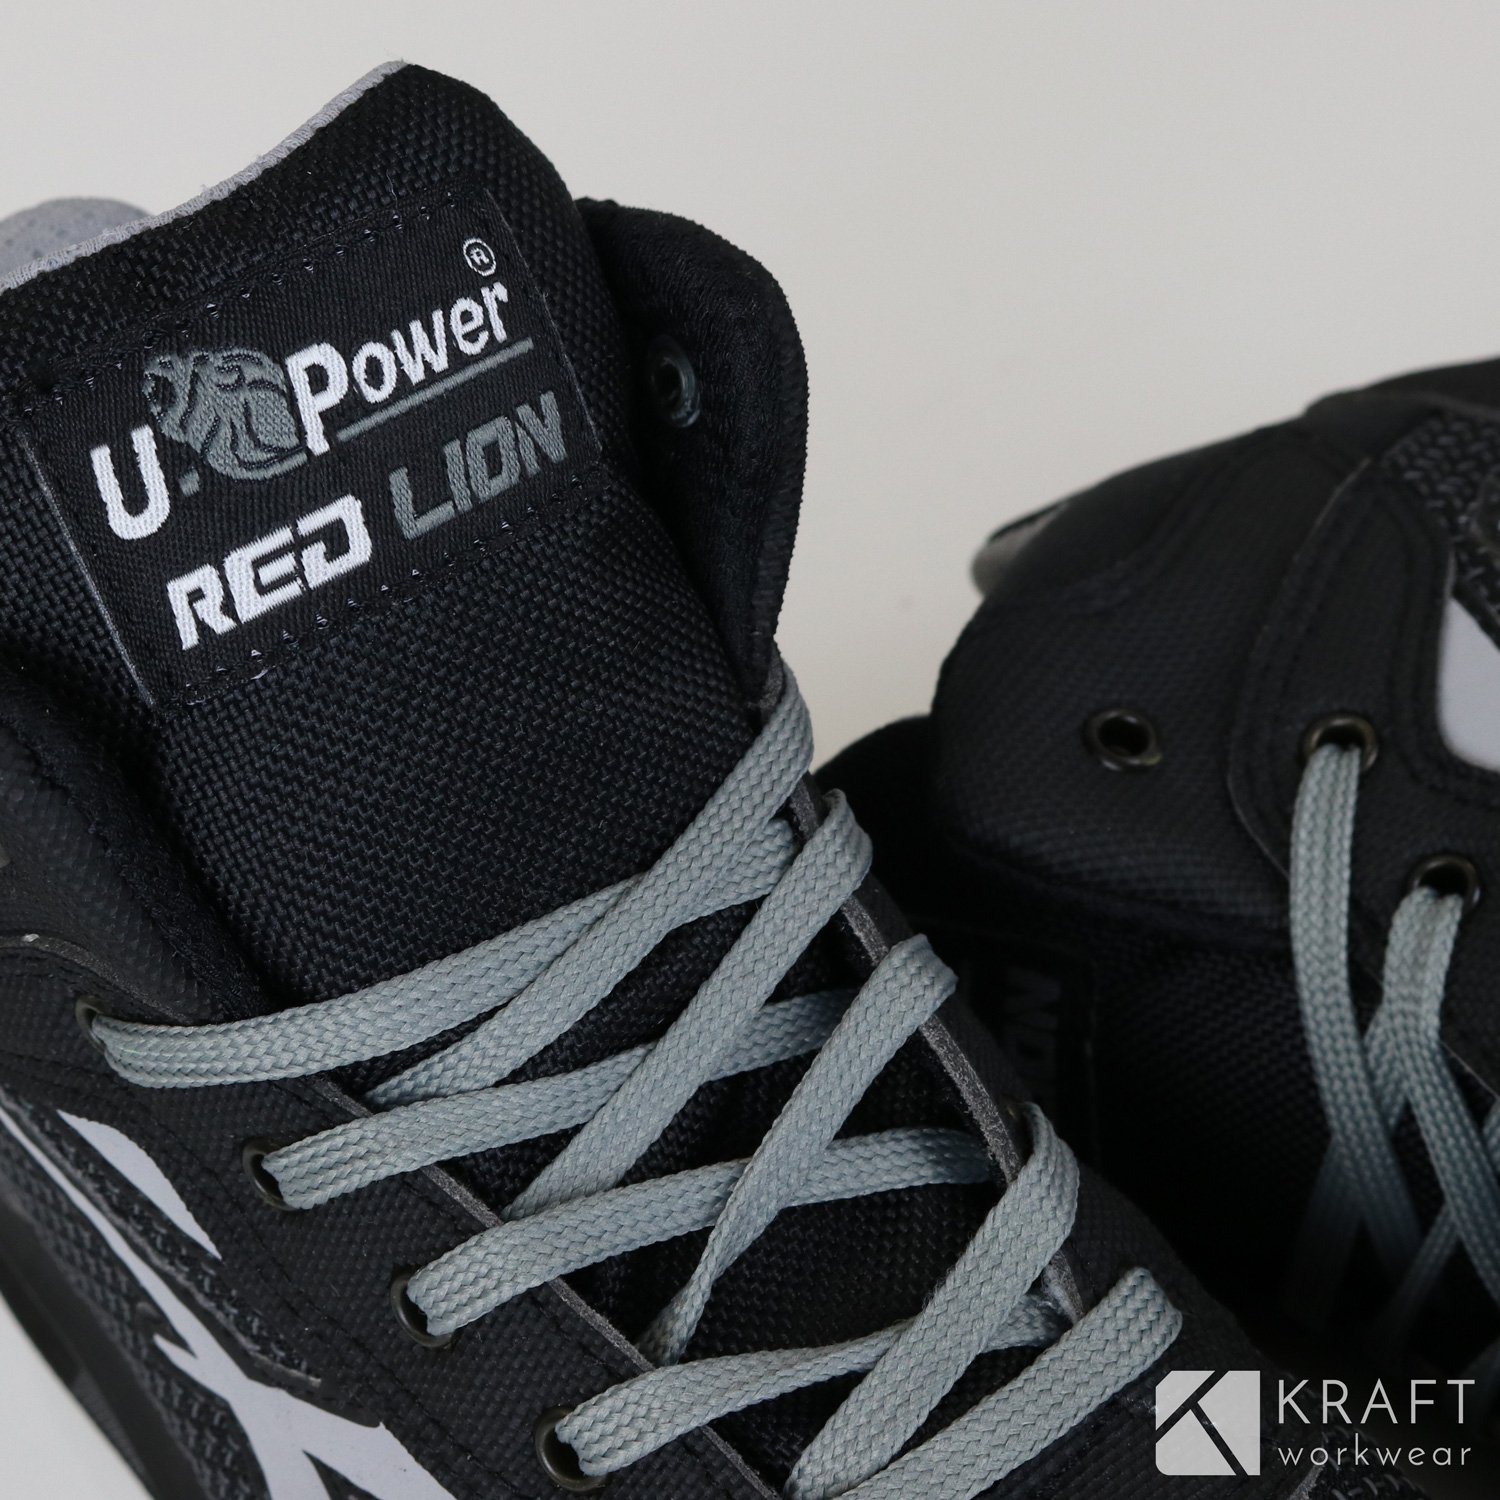 Test de la basket de sécurité U-Power Stego - Le Blog de Kraft